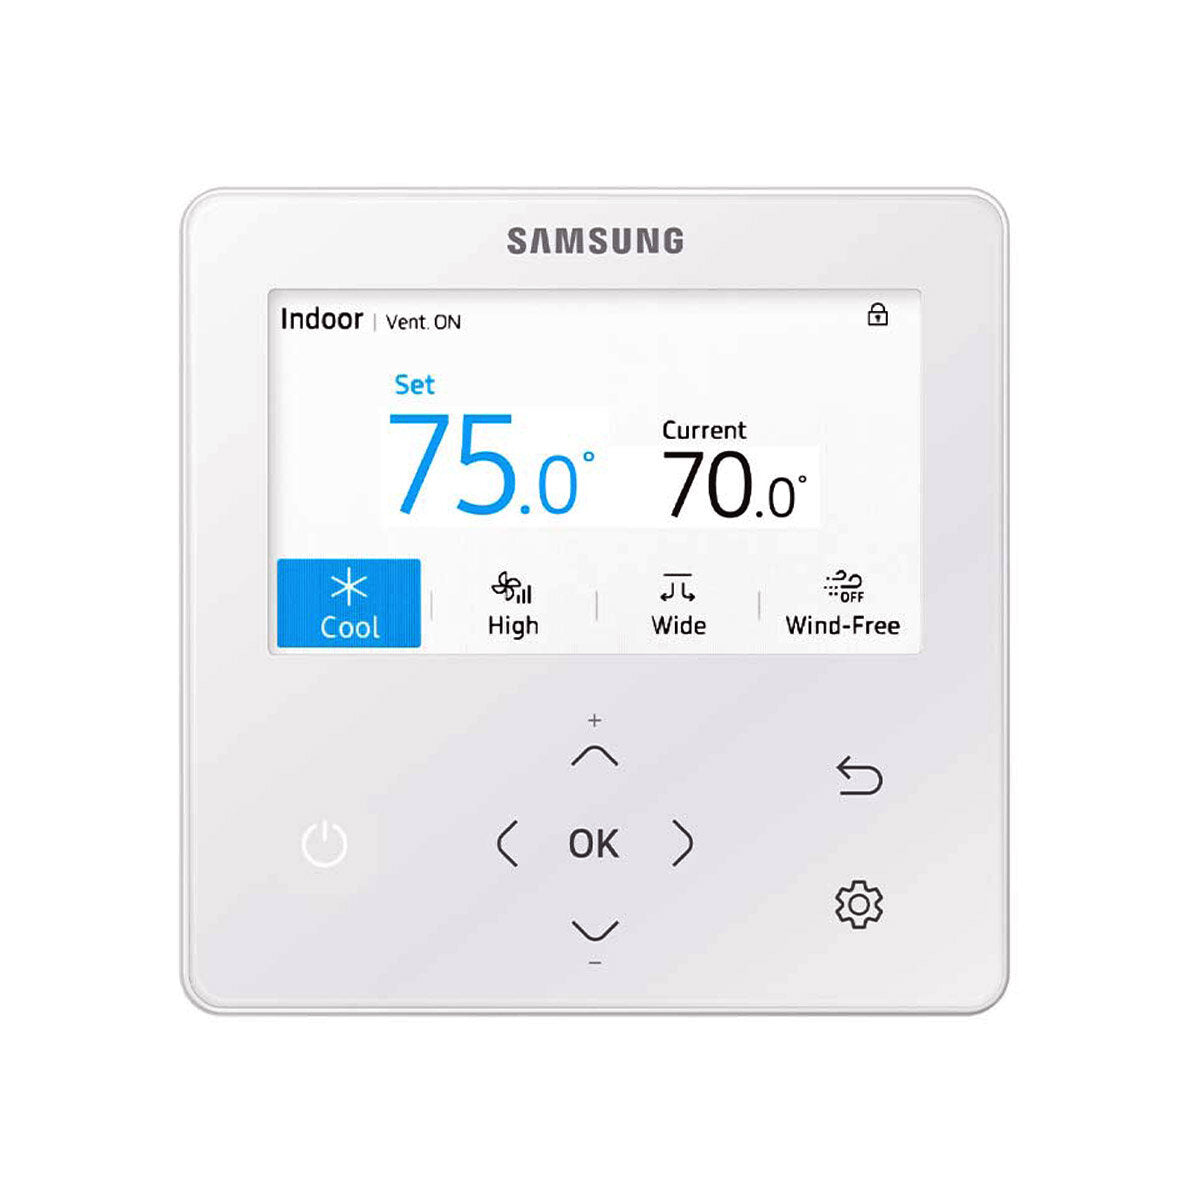 Samsung Klimaanlage Windfree 4-Wege Trial Split 12000 + 12000 + 12000 BTU Inverter A++ Außengerät 8,0 kW